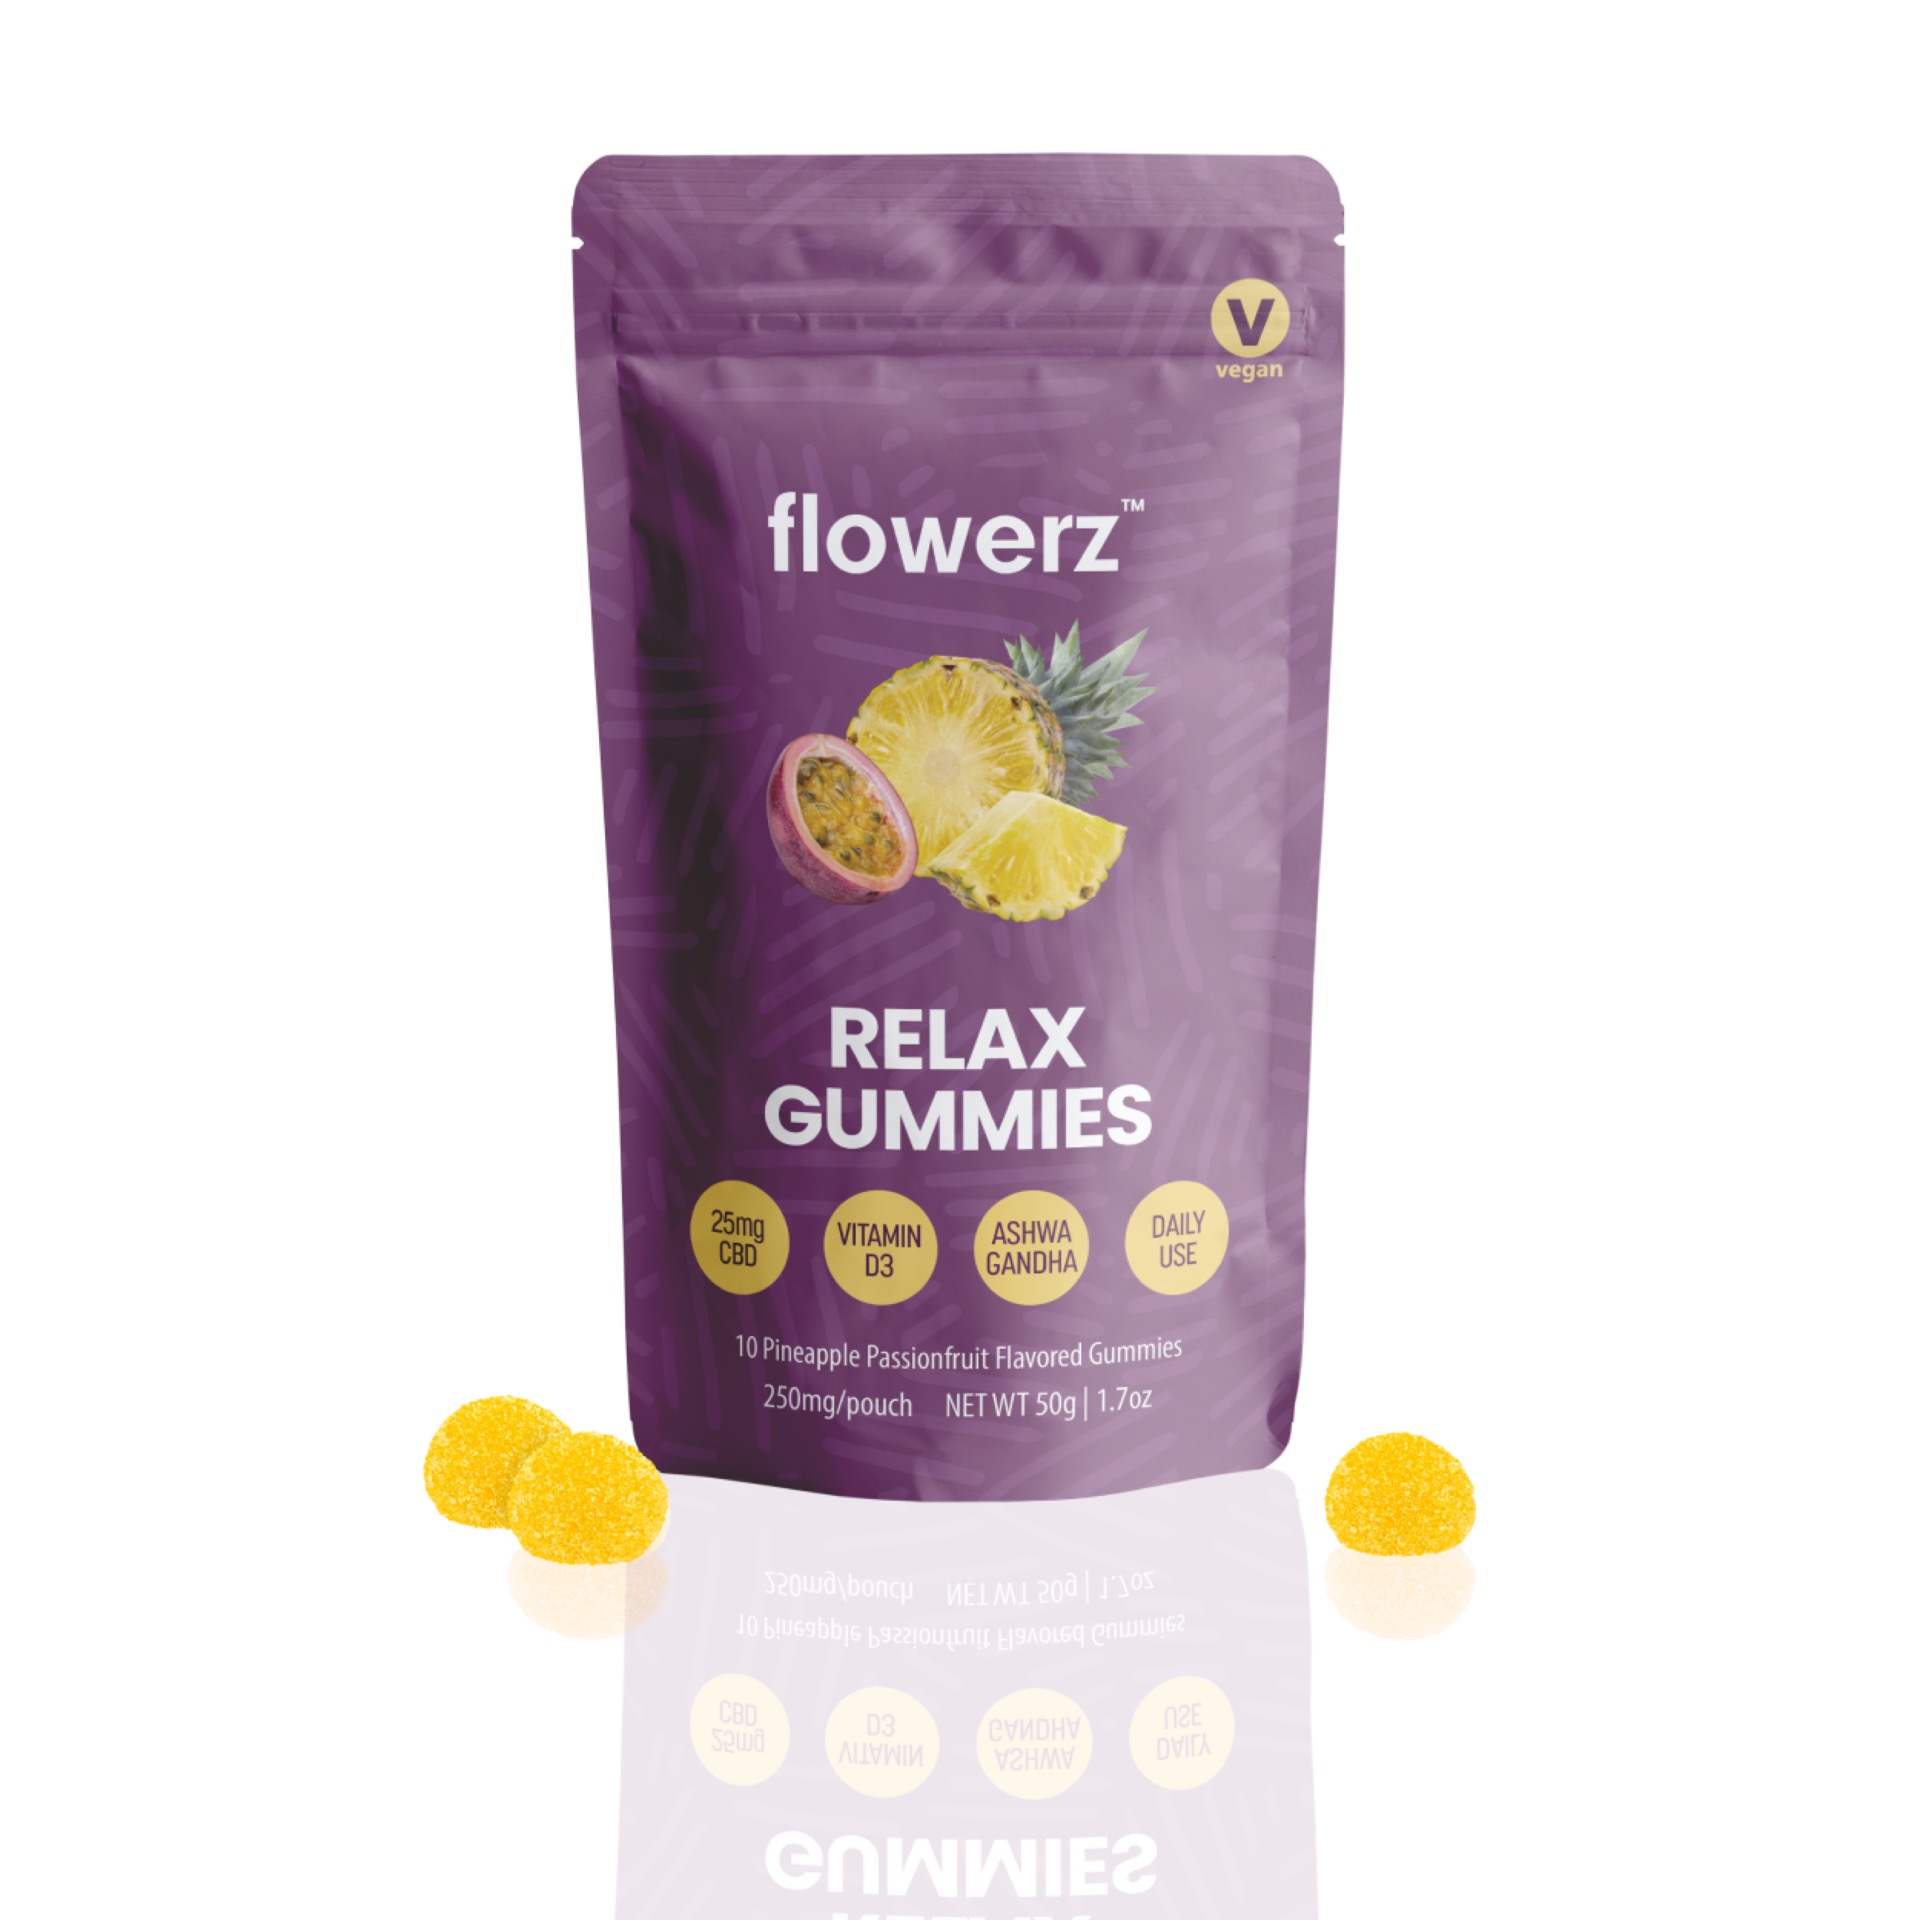 flowerz relax gummies packaging